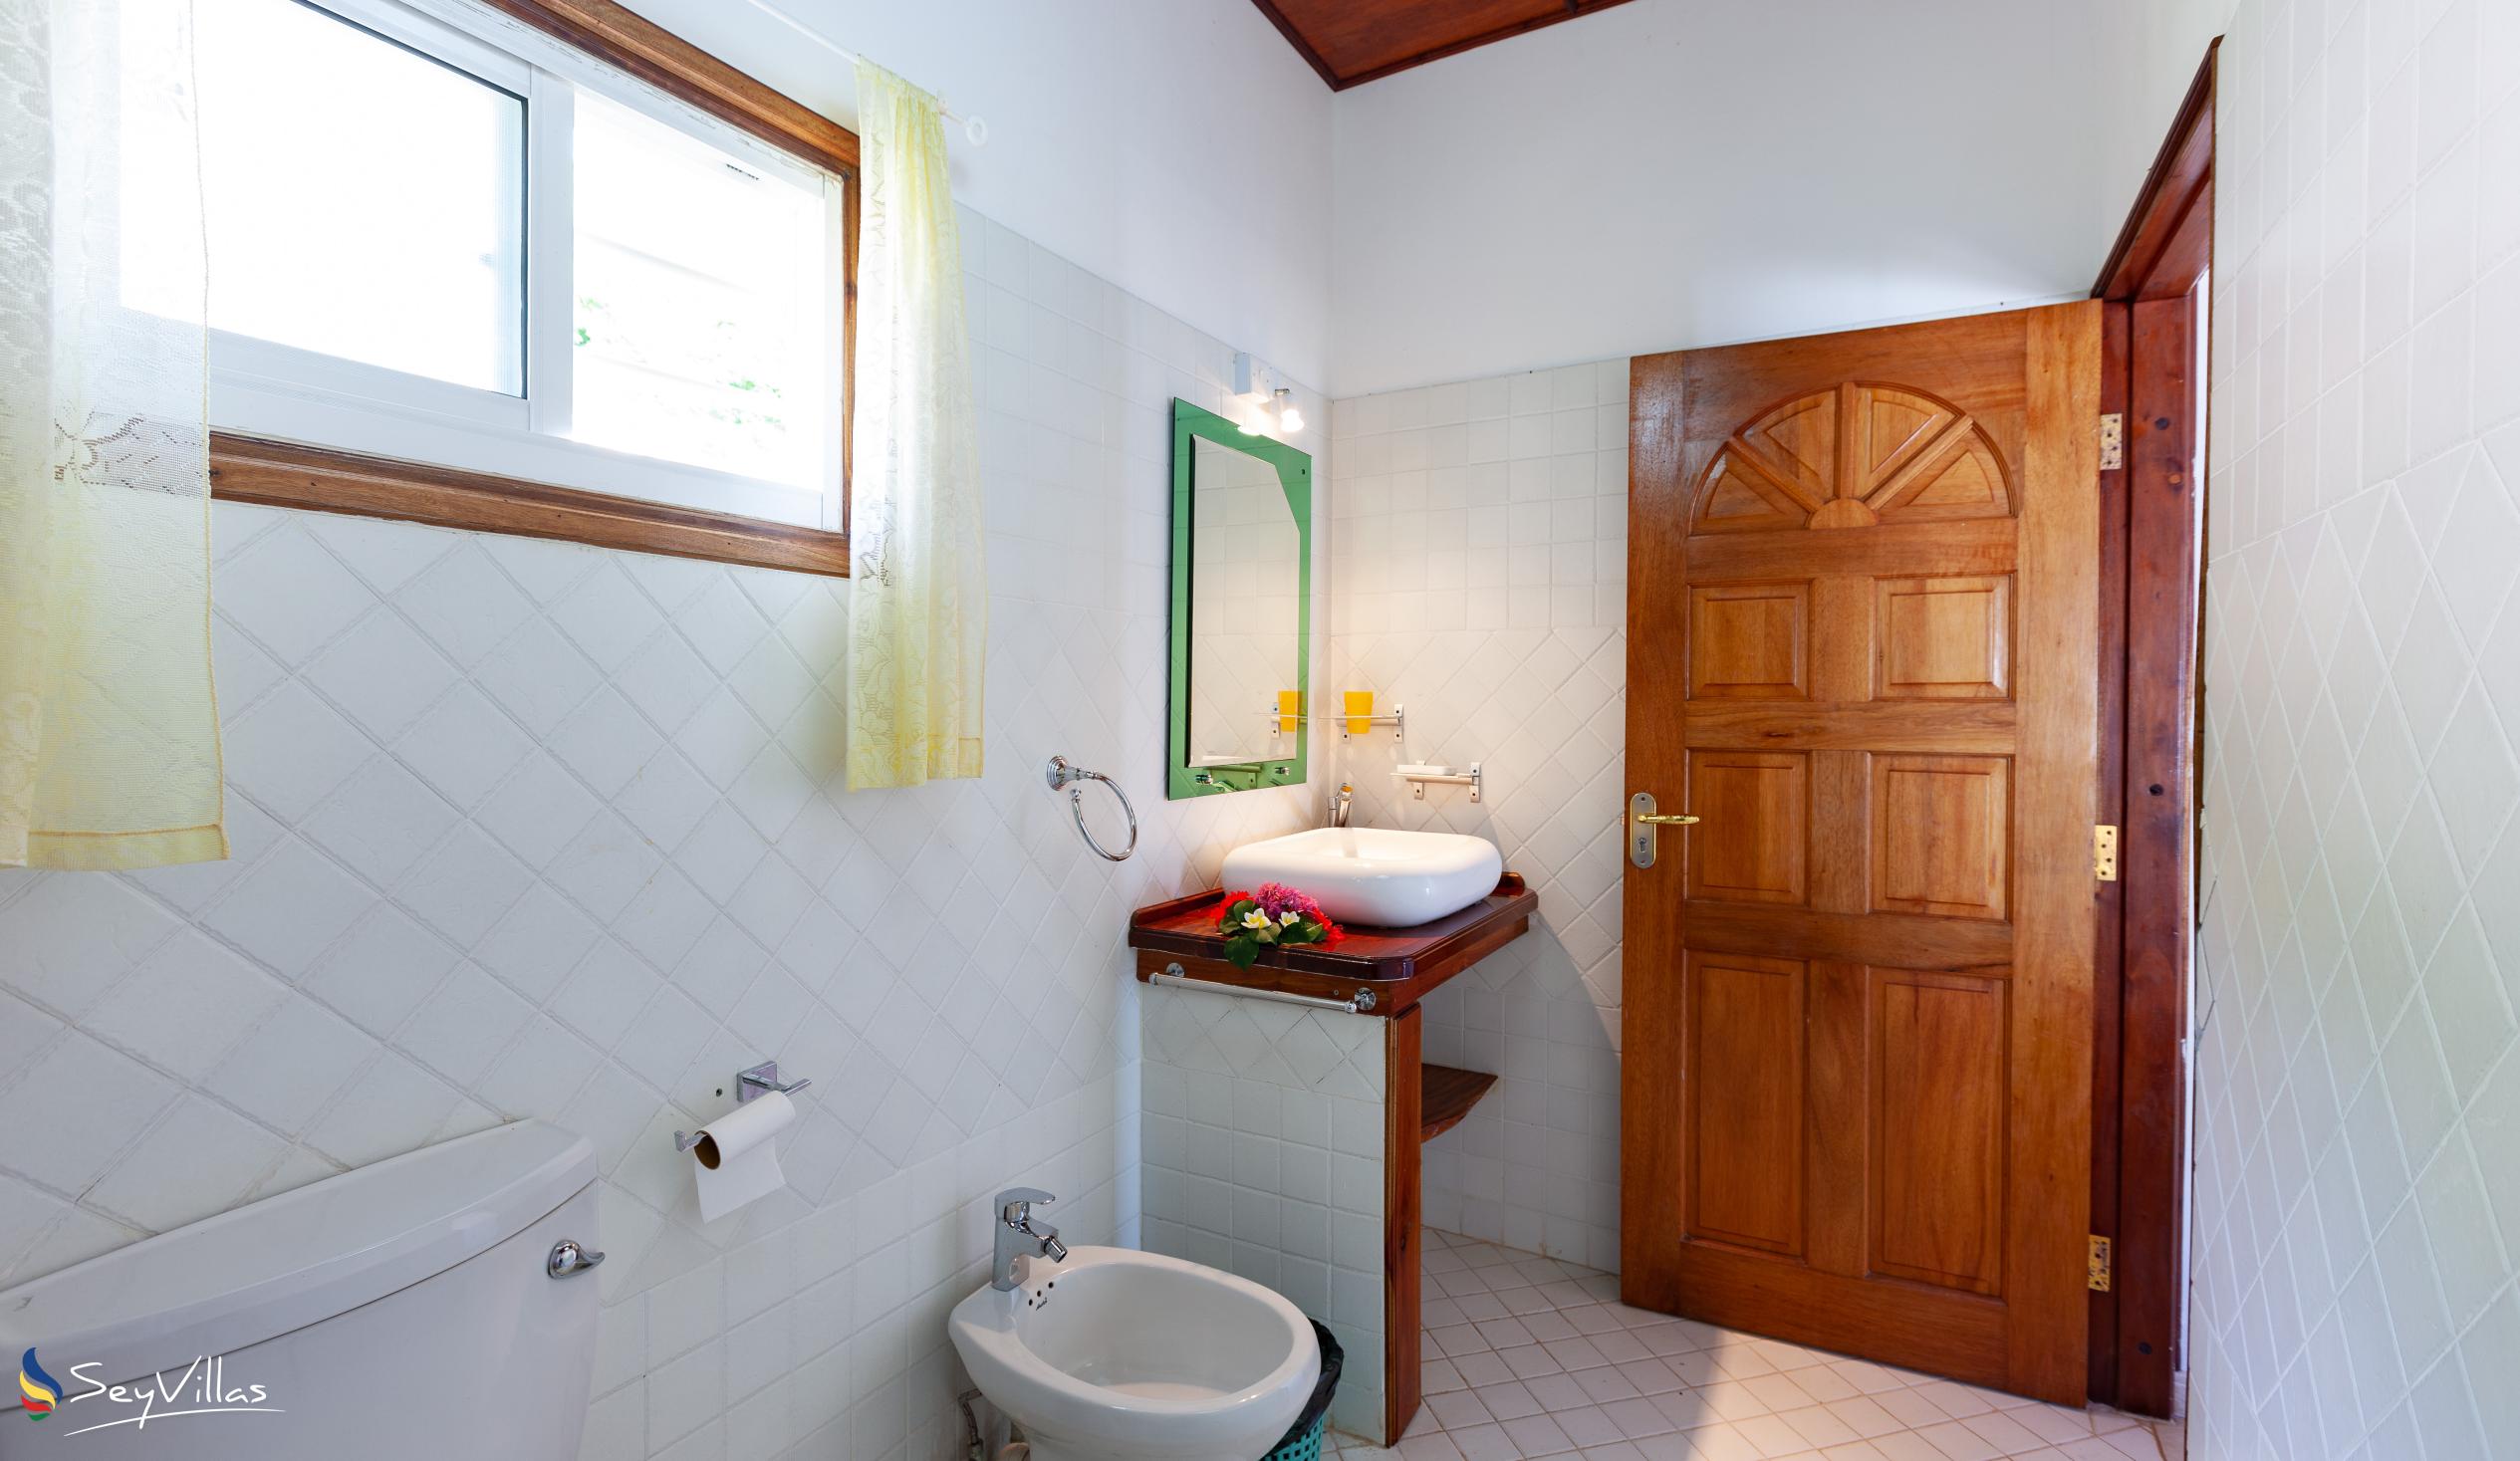 Foto 8: Baie Ste Anne Maison des Vacanze - Haus mit 2 Schlafzimmern - Praslin (Seychellen)